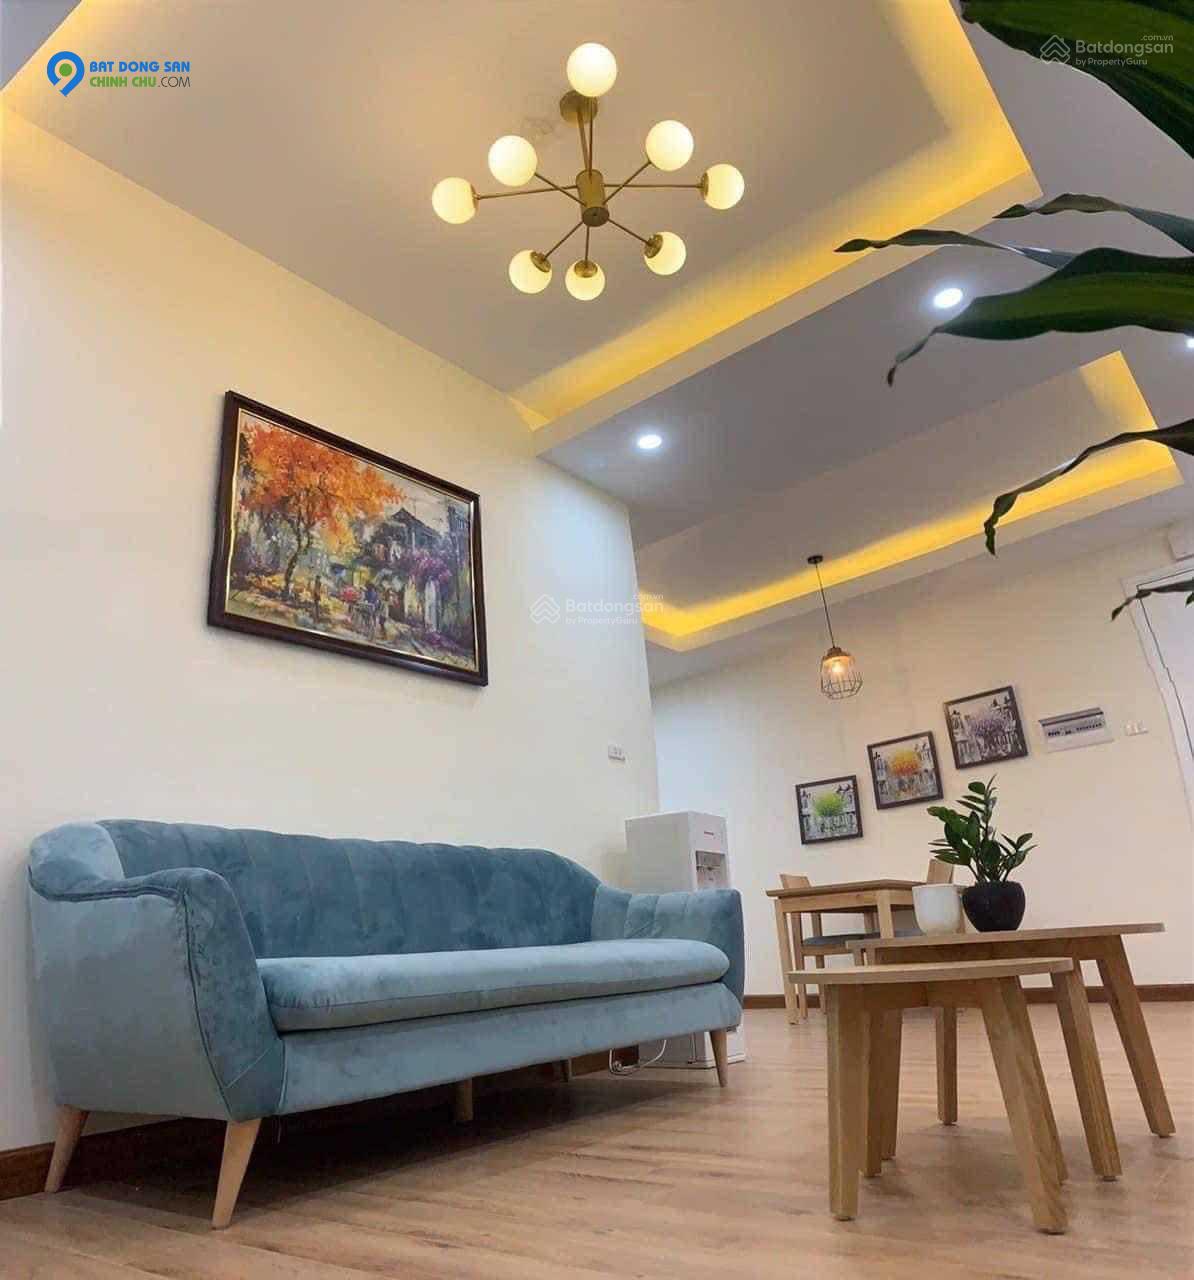 Cho Thuê căn hộ chung cư tại Vĩnh Yên full nội thất cao cấp.Giá 7tr/Tháng. LH 0866.99.58.59